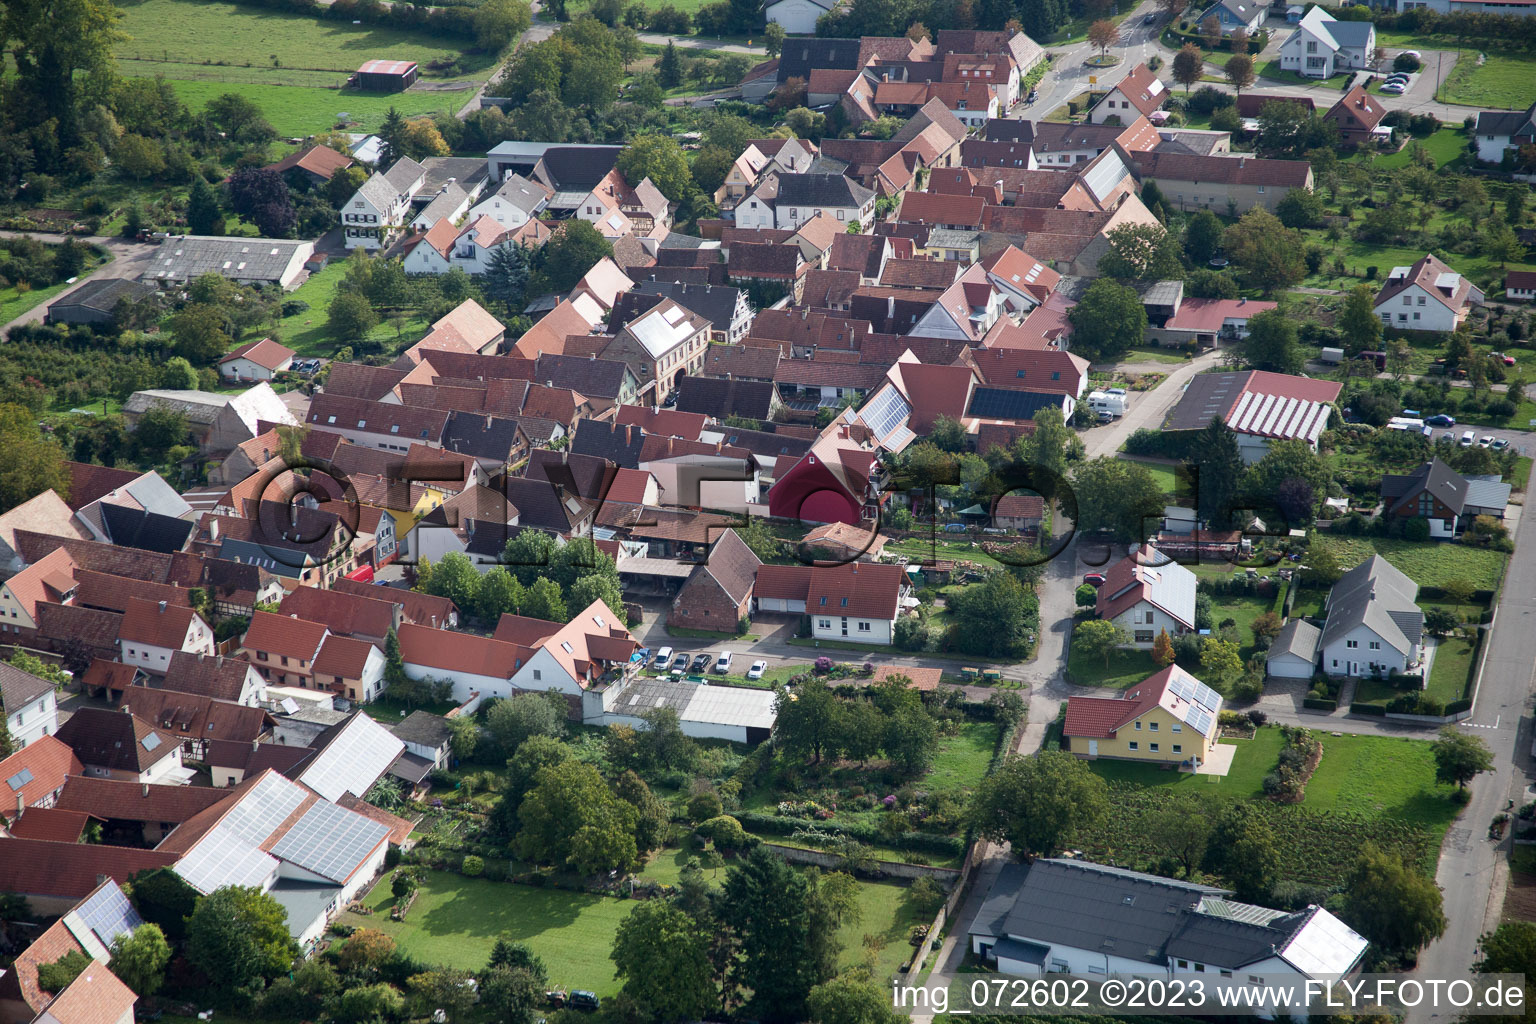 Aerial view of At the parish garden in the district Heuchelheim in Heuchelheim-Klingen in the state Rhineland-Palatinate, Germany